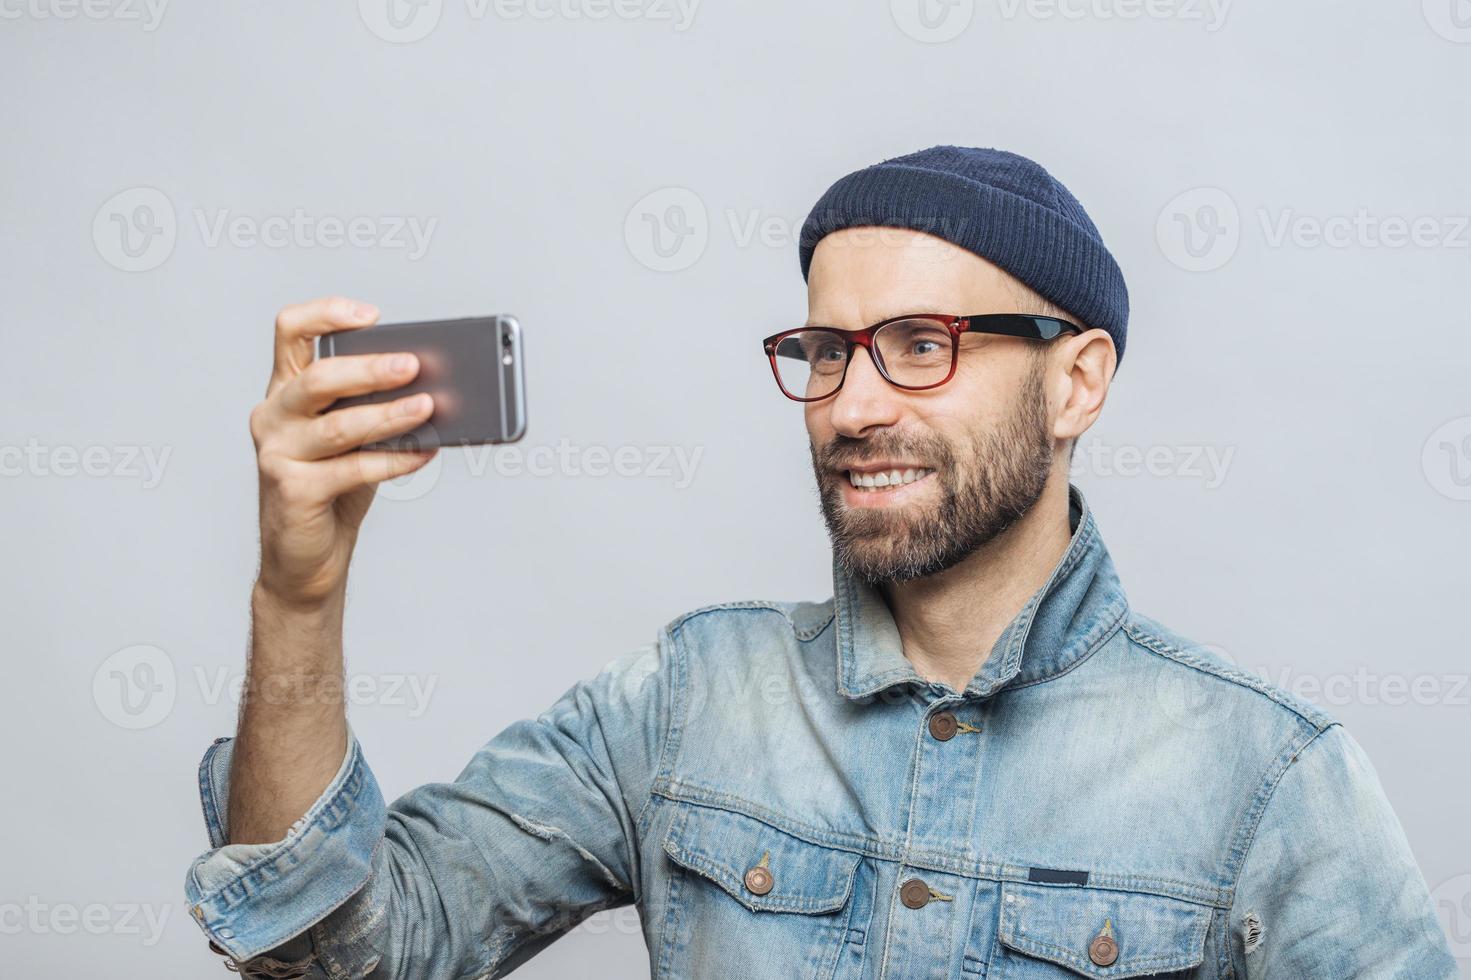 blij lachende bebaarde man met gelukkige uitdrukking poseert op camera van smartphone, neemt foto van zichzelf, draagt spijkerjasje en bril, geïsoleerd op witte achtergrond. mensen en technologie concept